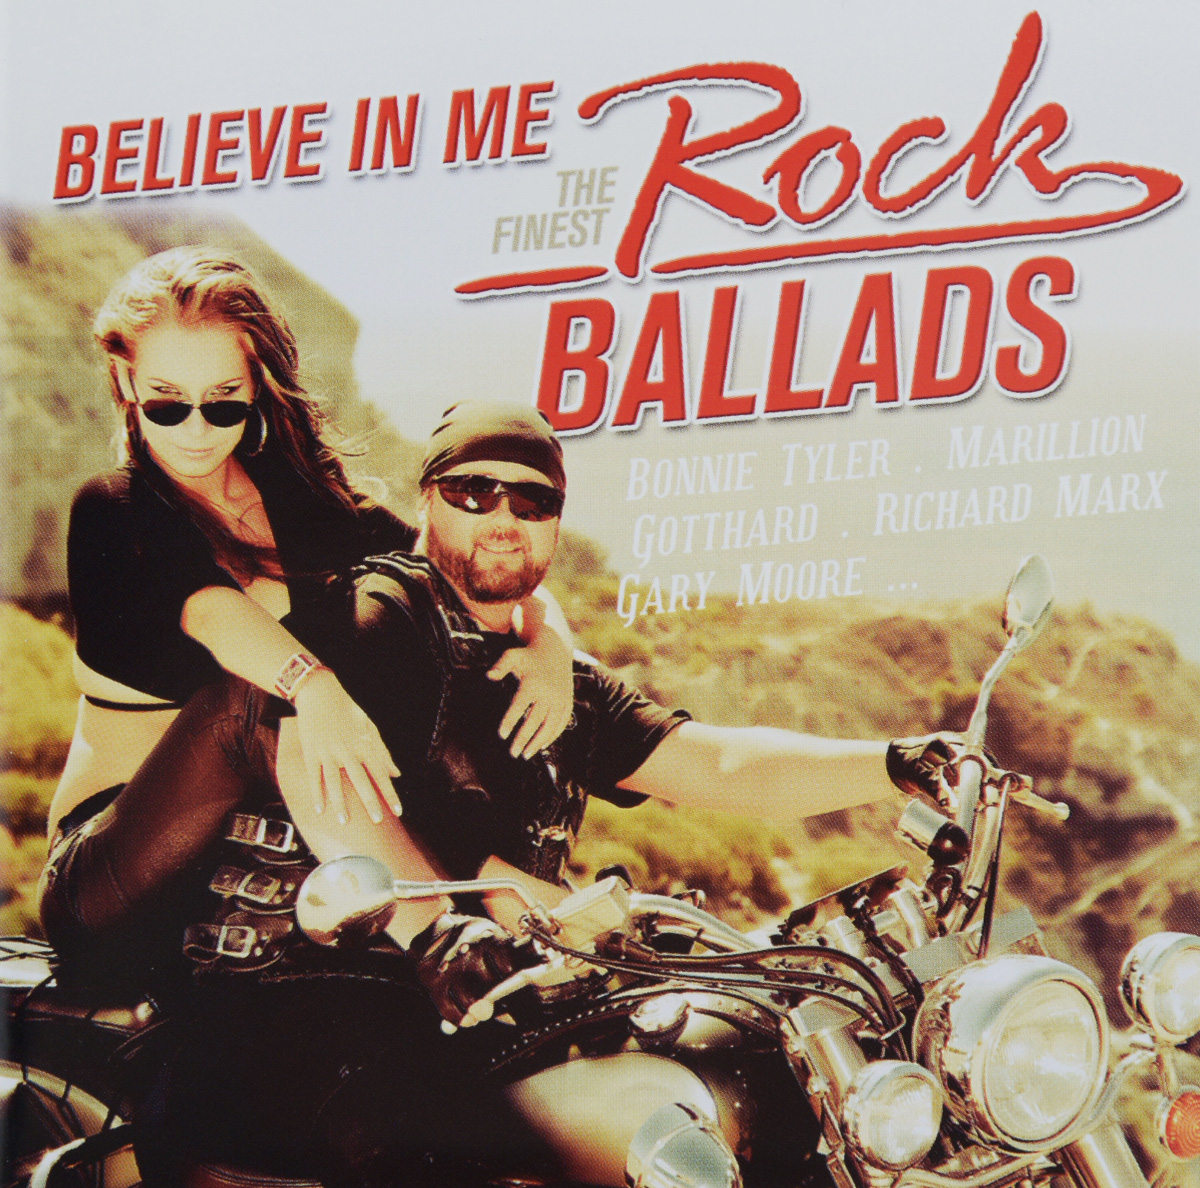 Believe In Me. The Finest Rock Ballads